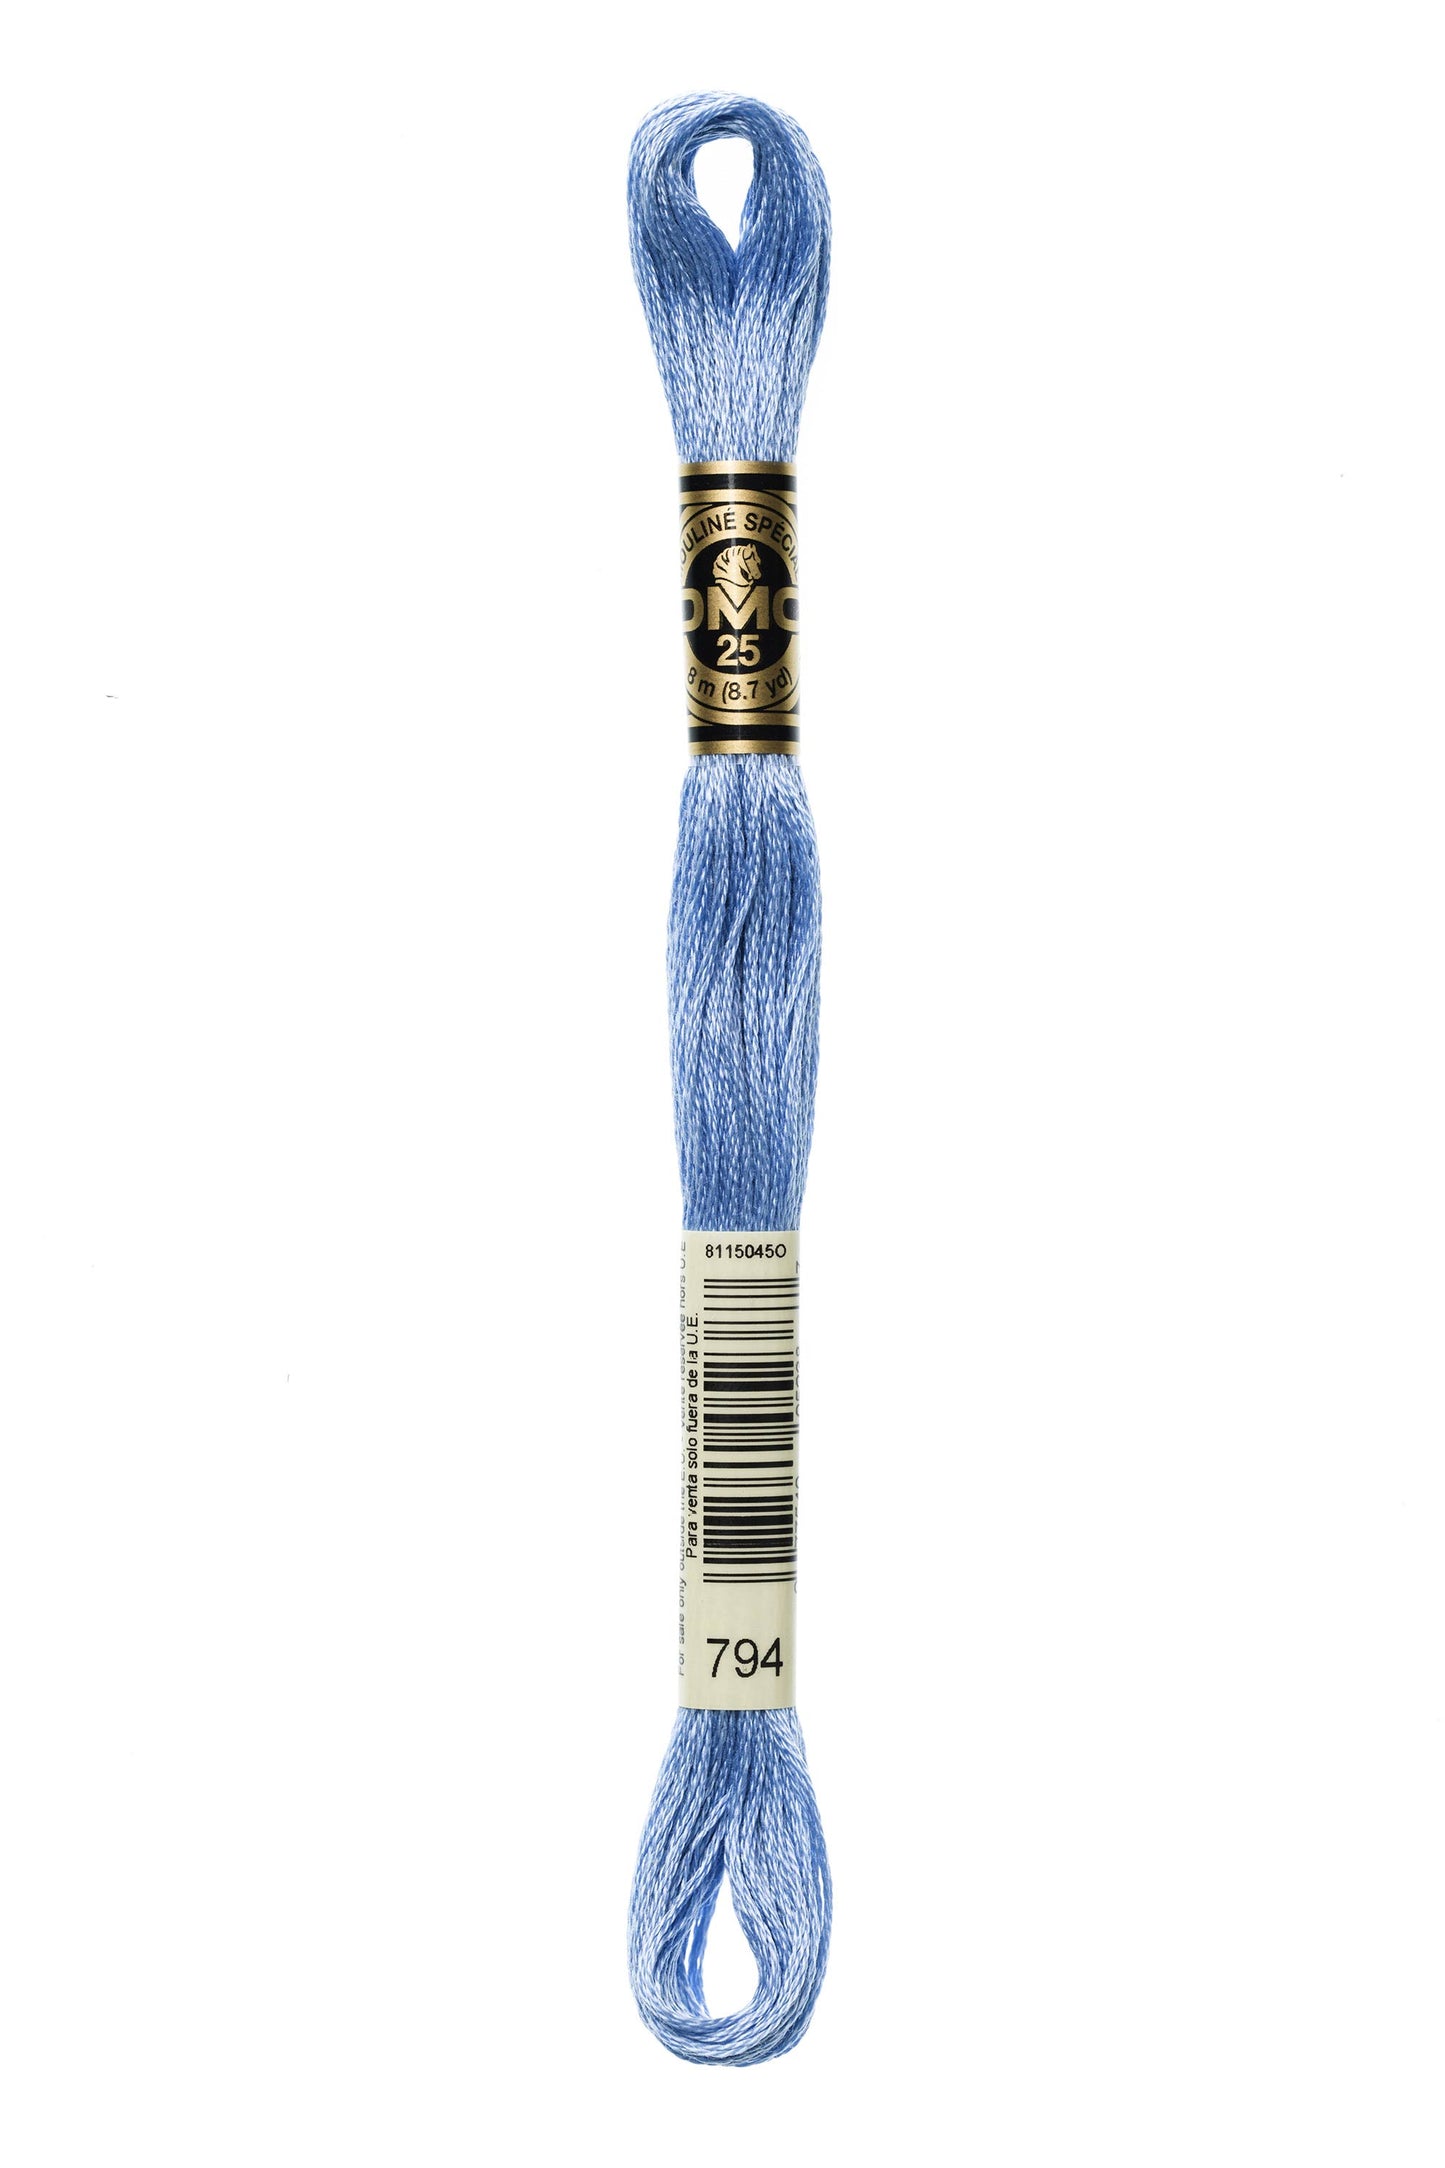 DMC Floss # 794 - Light Cornflower Blue